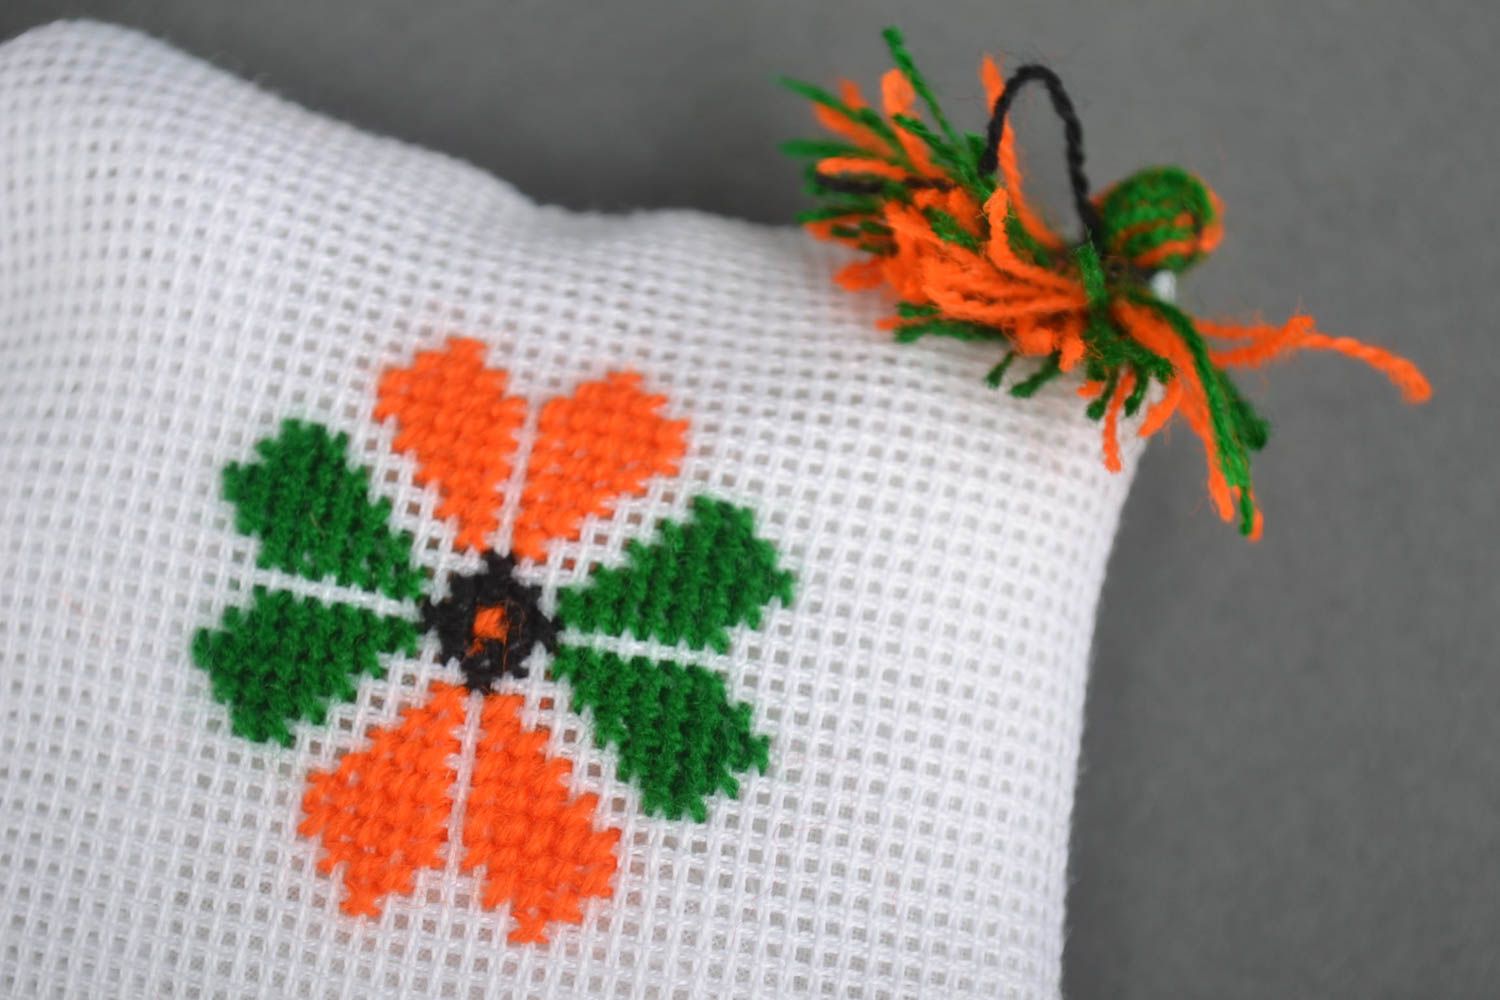 Аксессуар для шитья хэнд мэйд вышитая игольница подушечка для иголок с цветочком фото 2